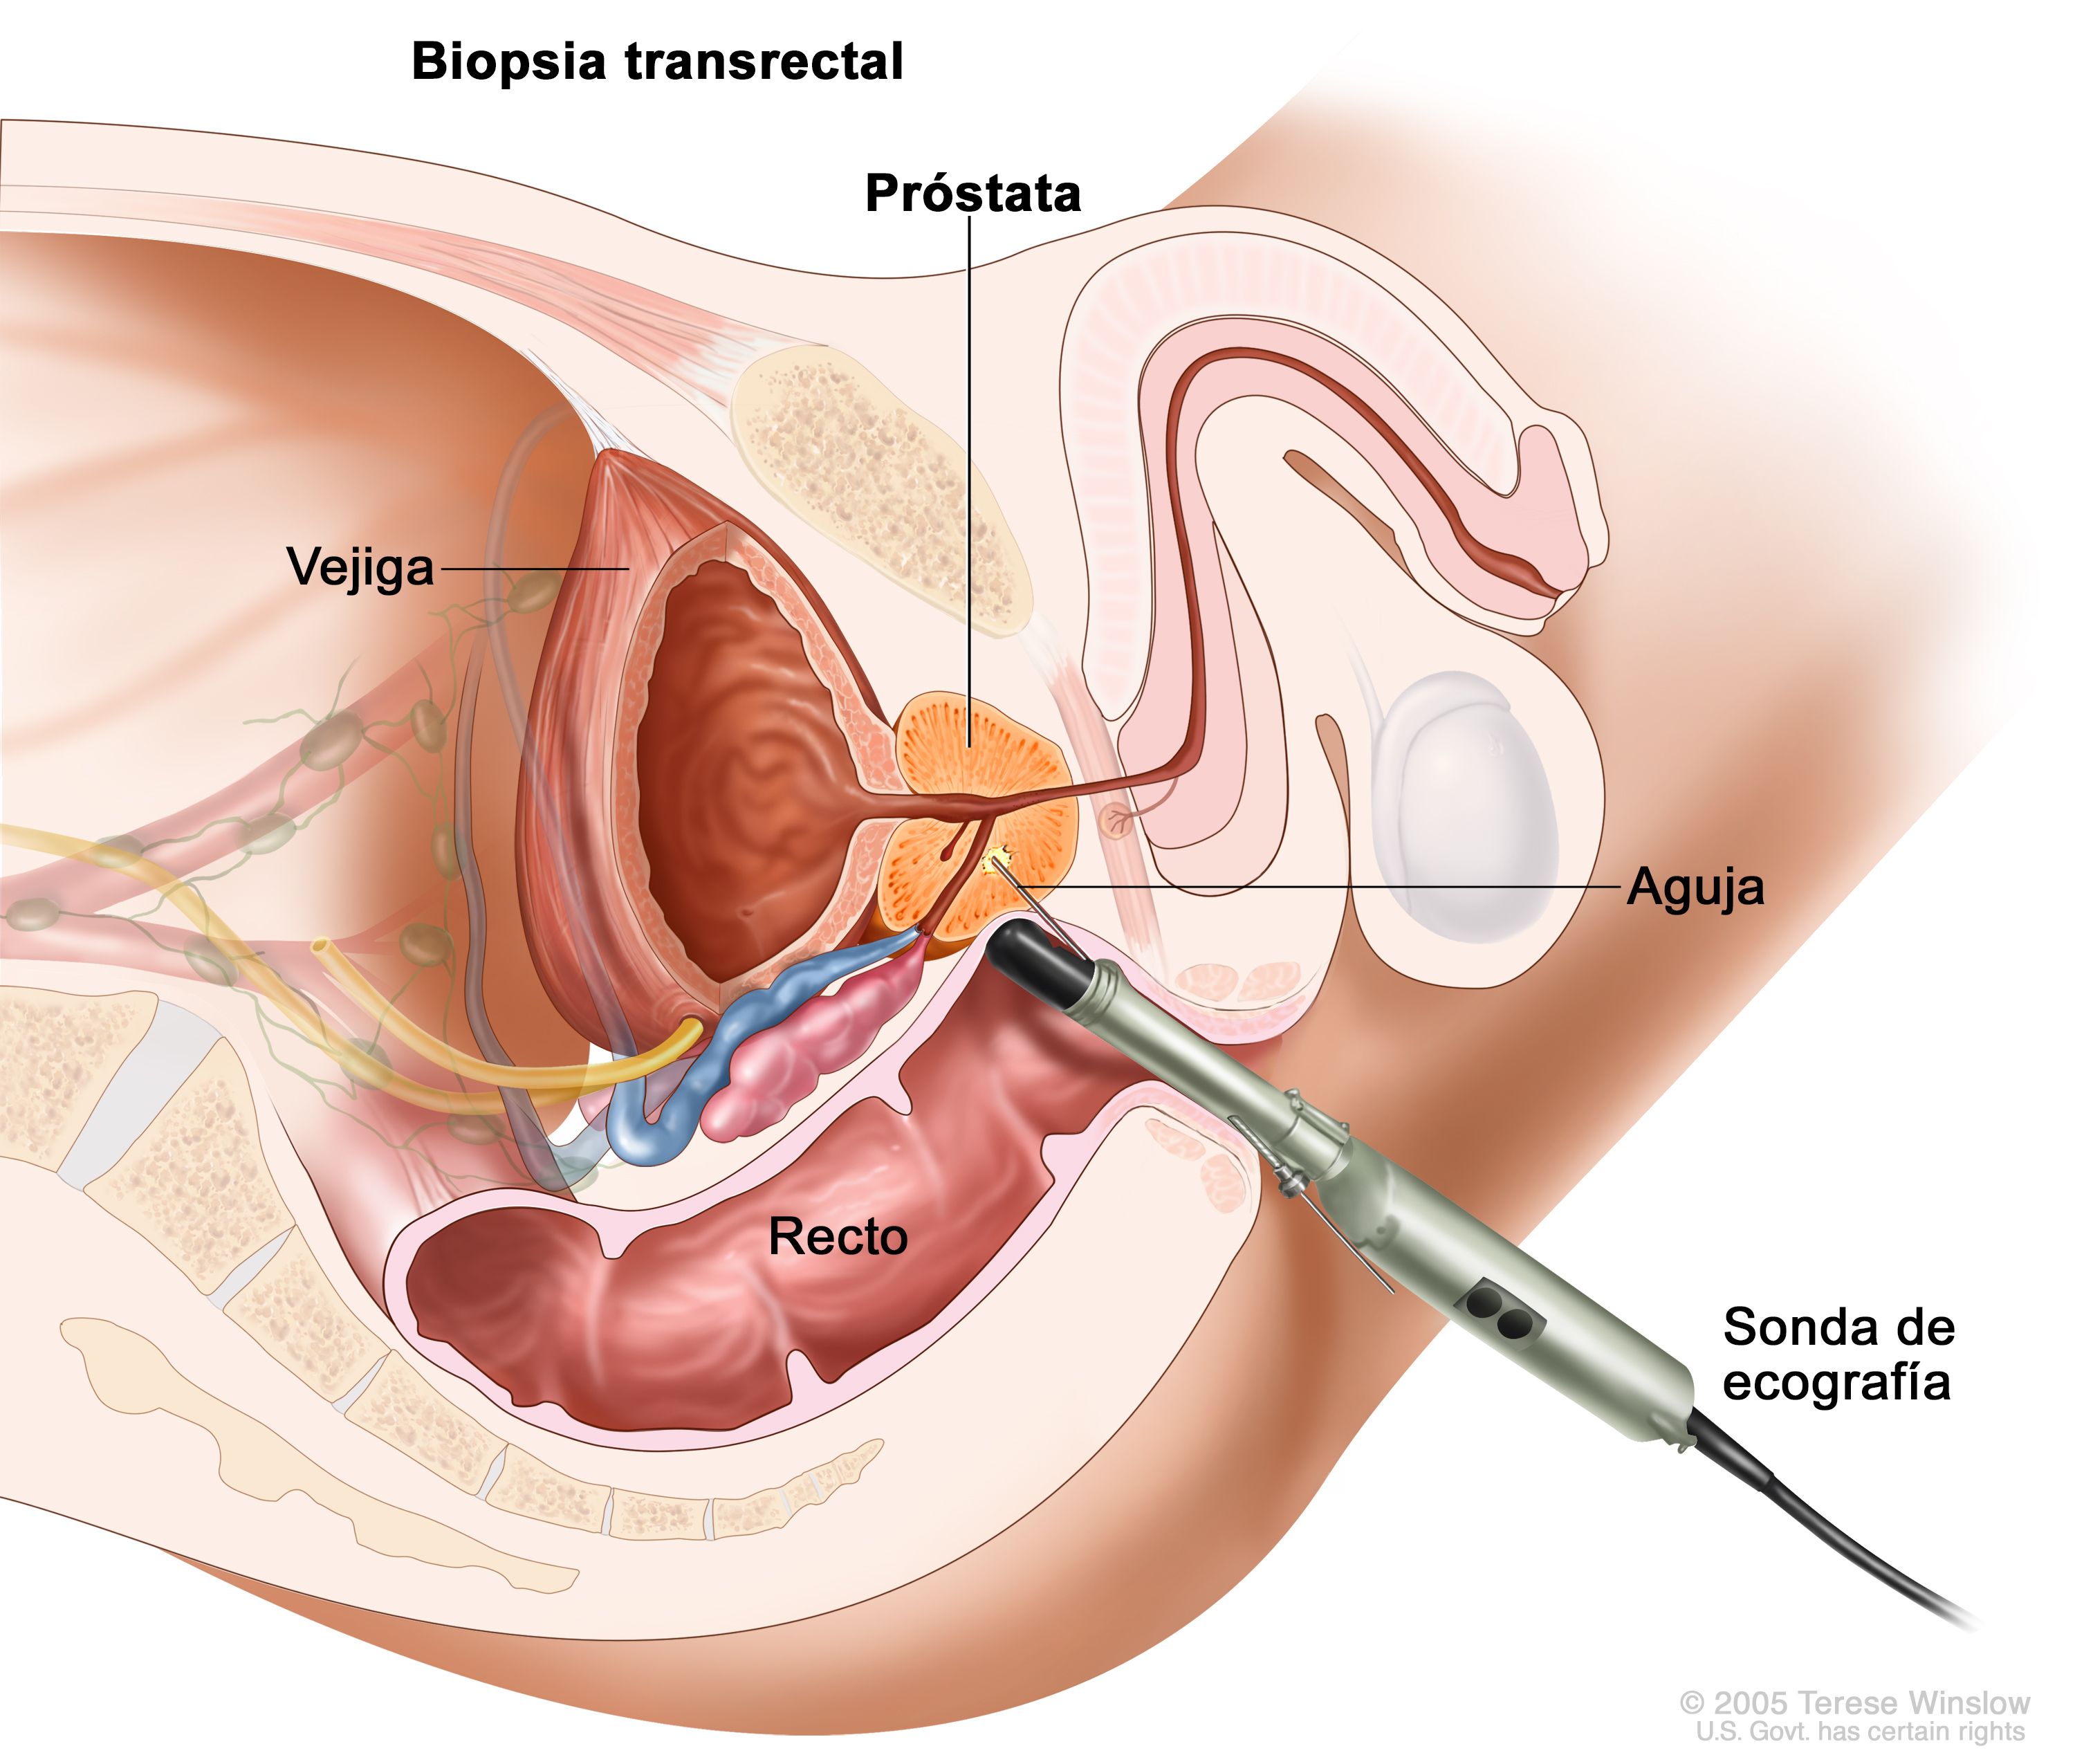 como se hace una biopsia de próstata